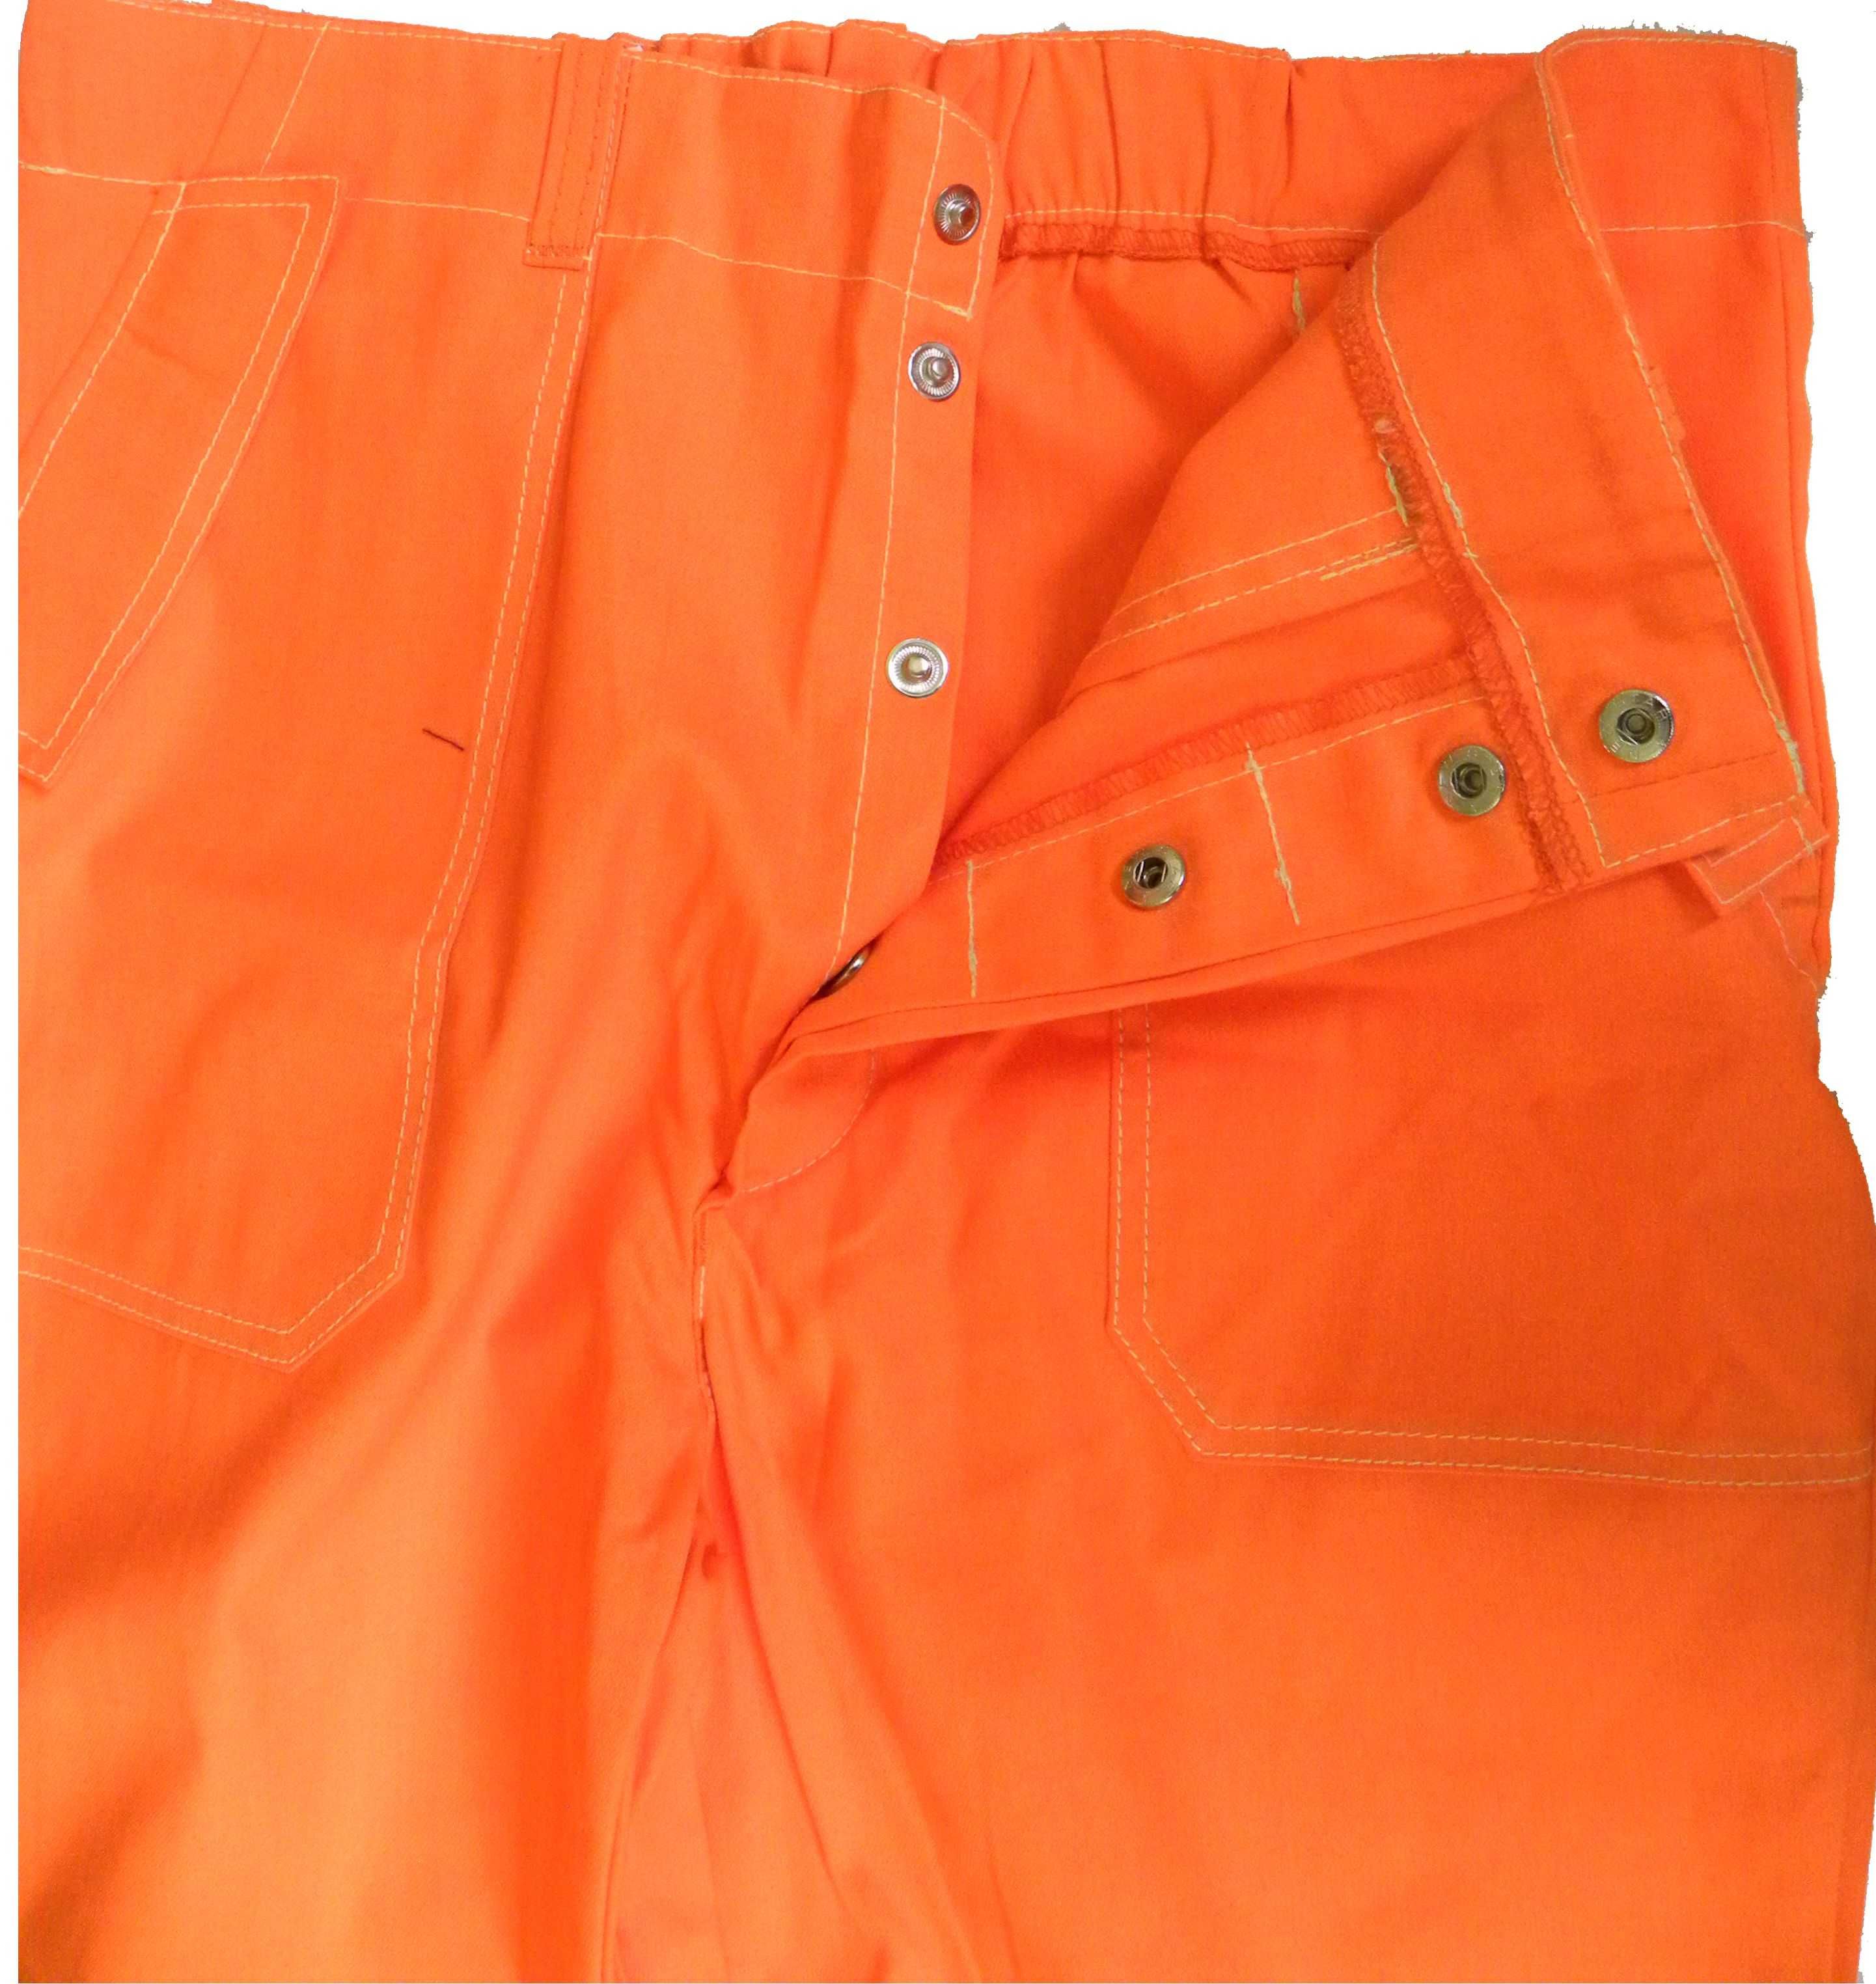 ubranie spawacza standard ,pomarańczowe z odblaskami r.176/112